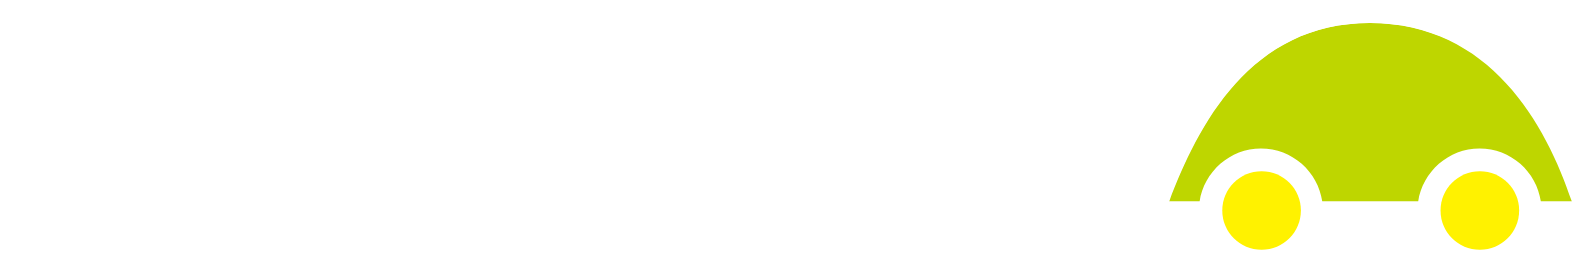 Kamux logo large for dark backgrounds (transparent PNG)